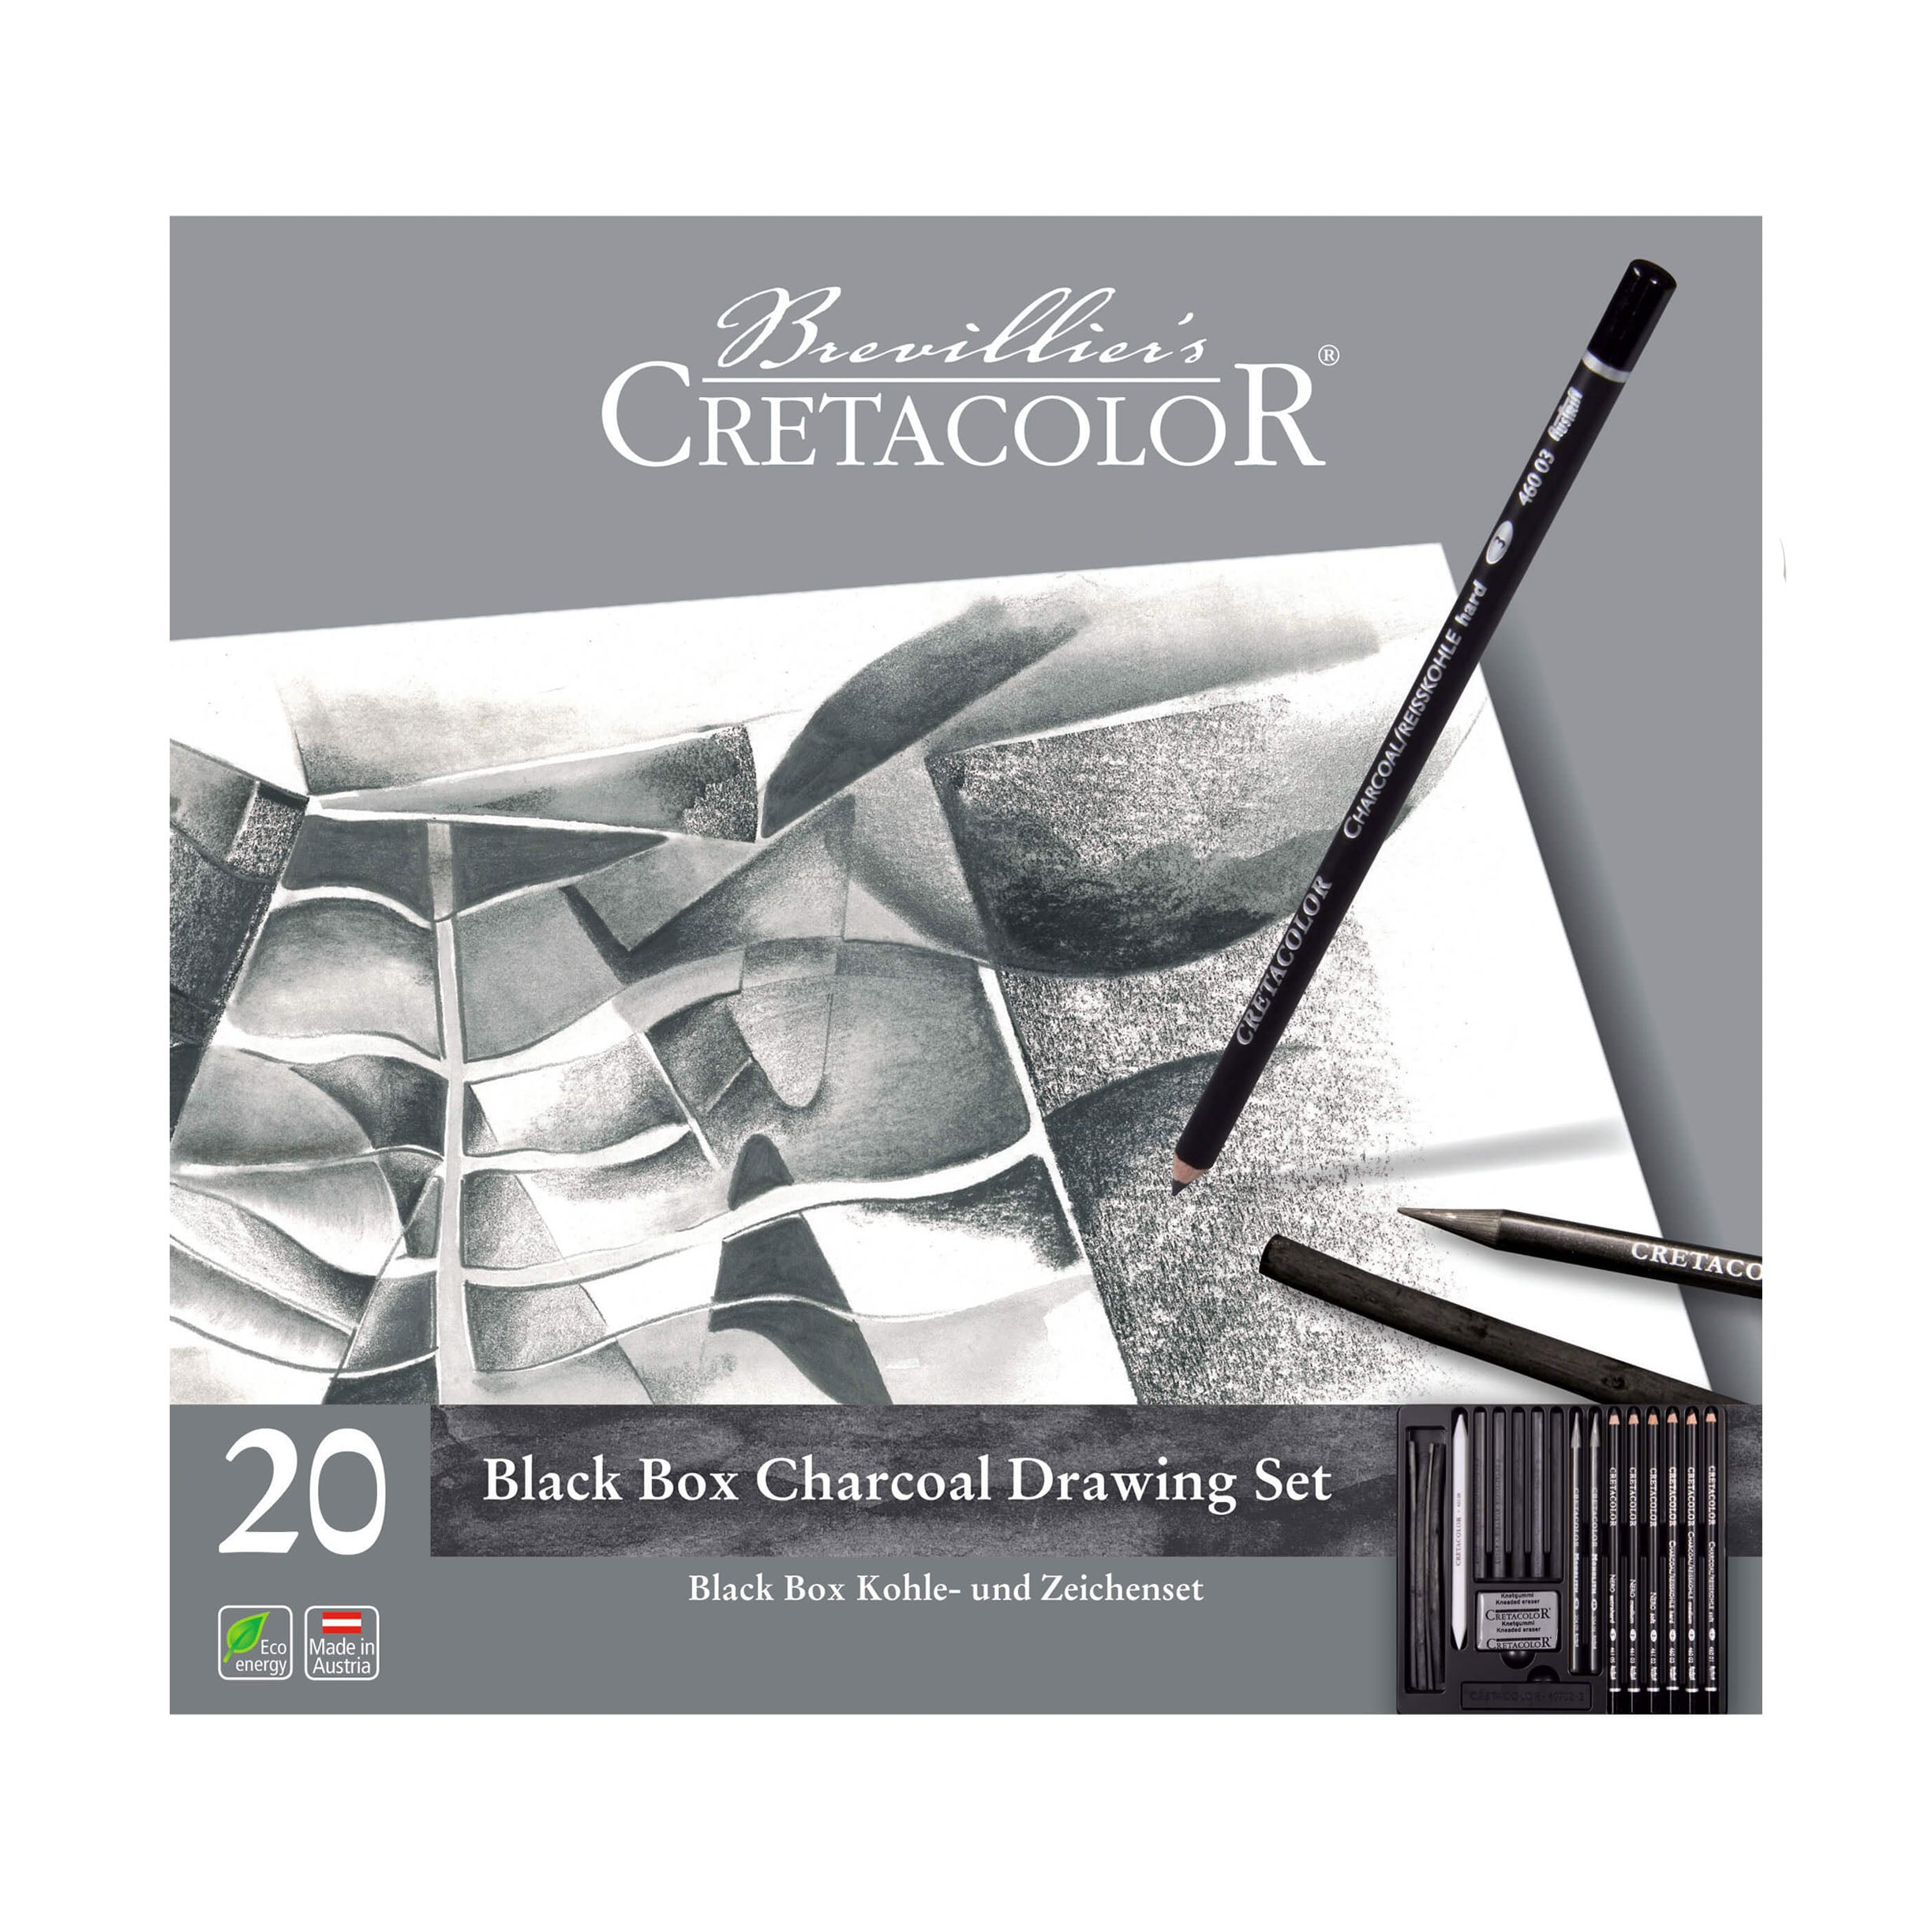 Cretacolor Charcoal Drawing Set